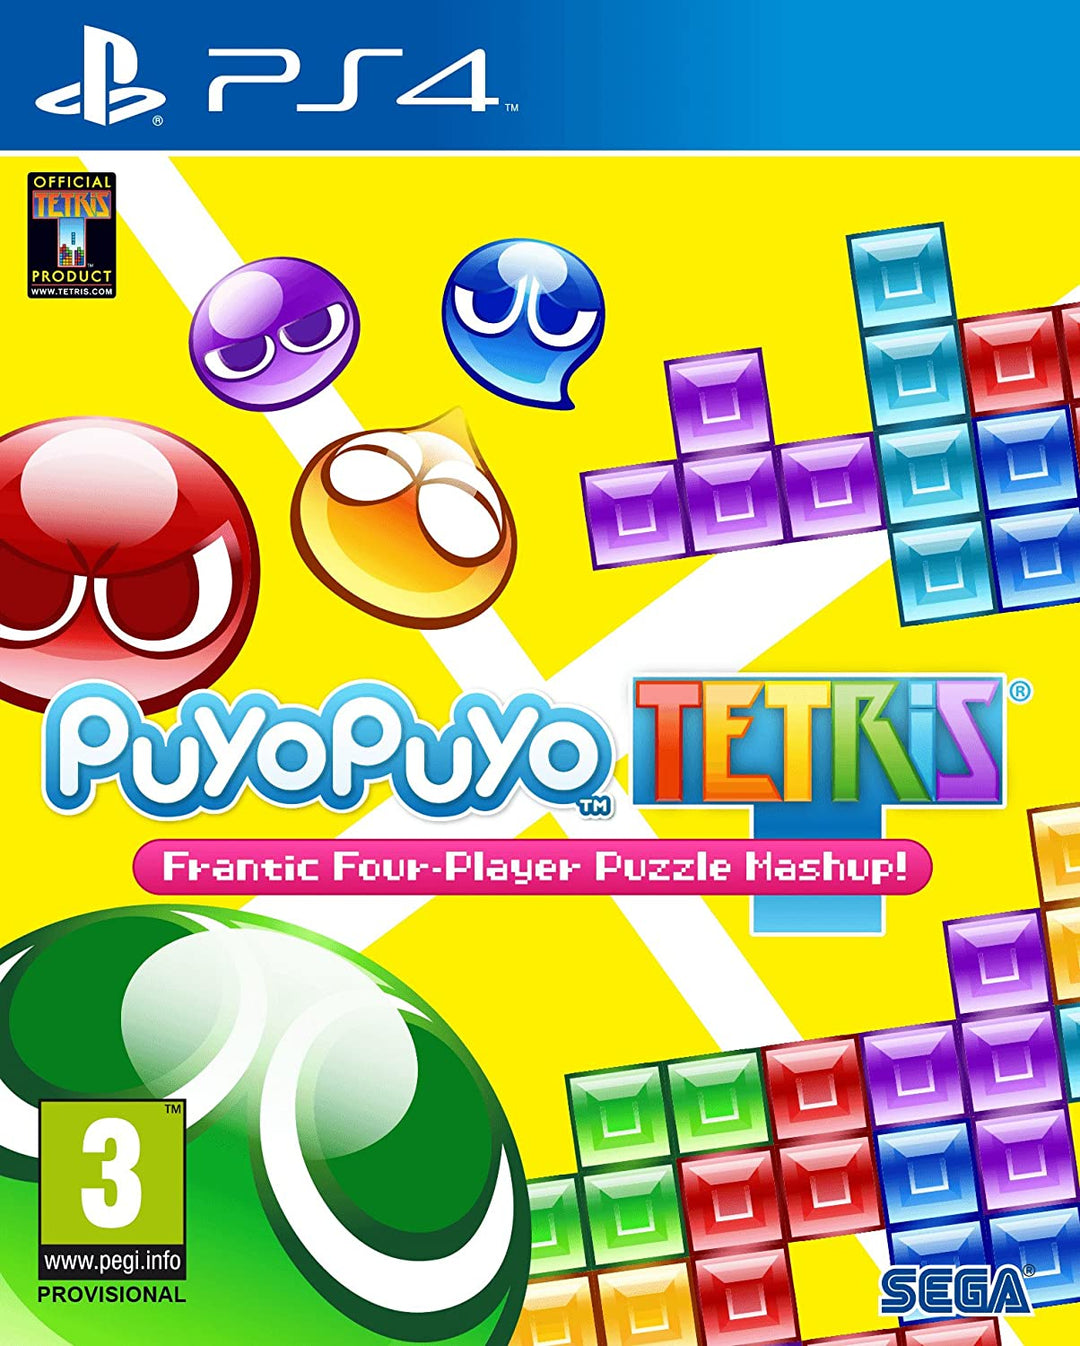 Giochi per Console Publisher Minori SEGA Puyo Puyo Tetris